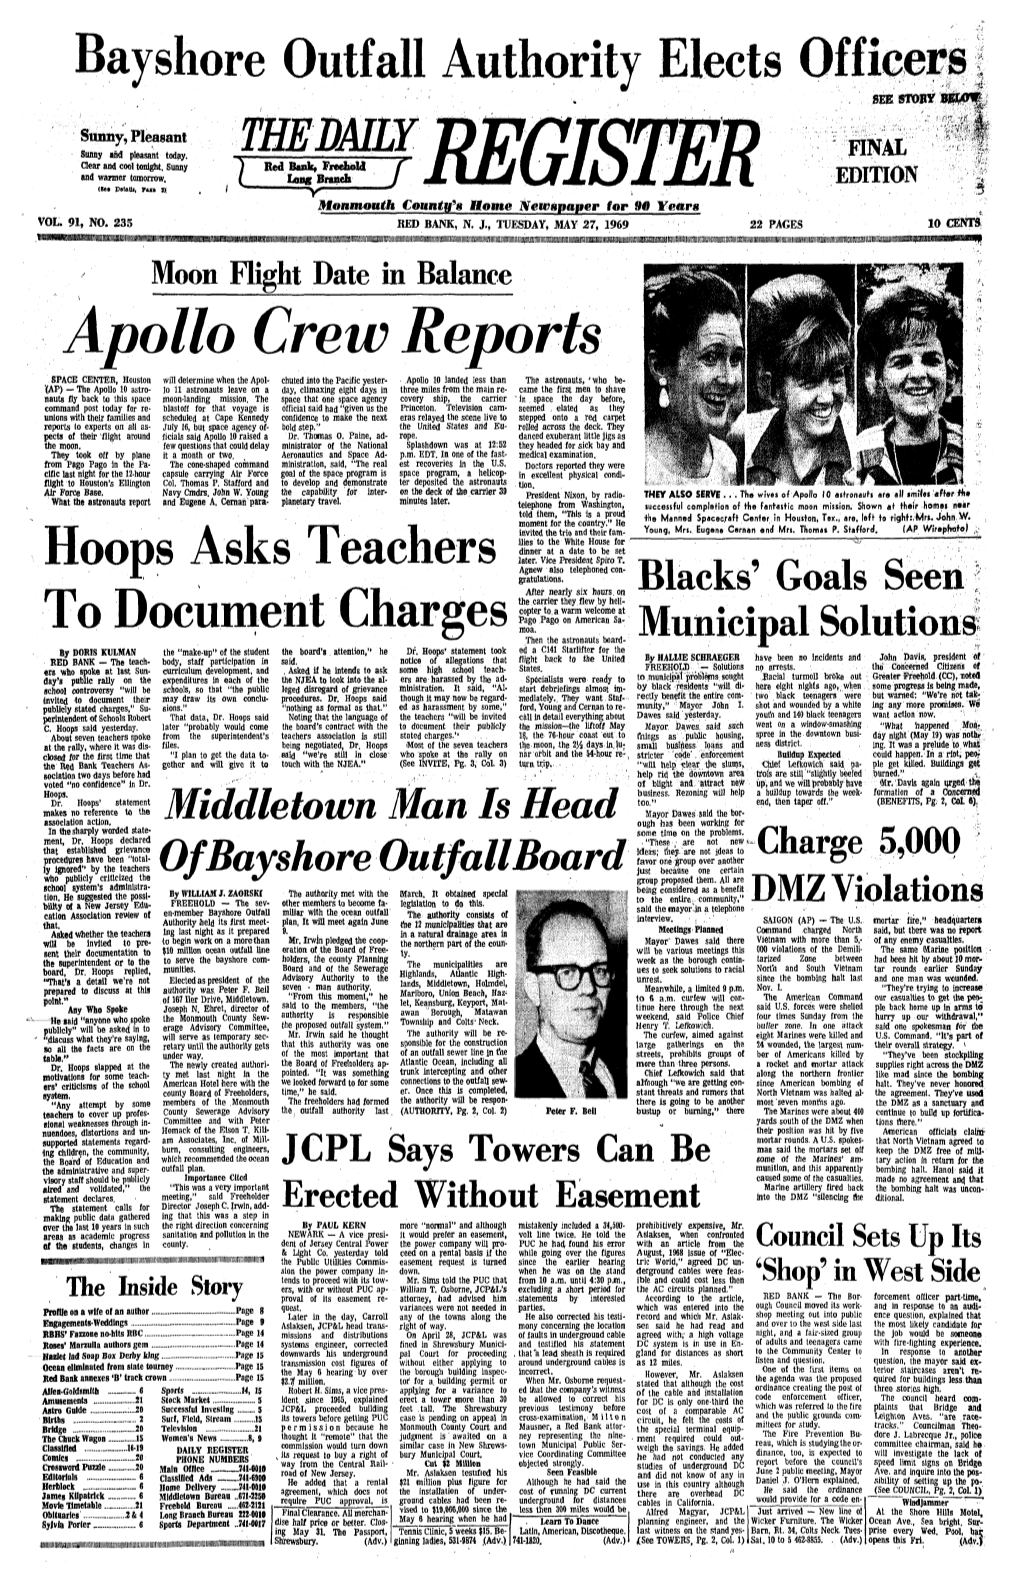 Apollo Crew Reports